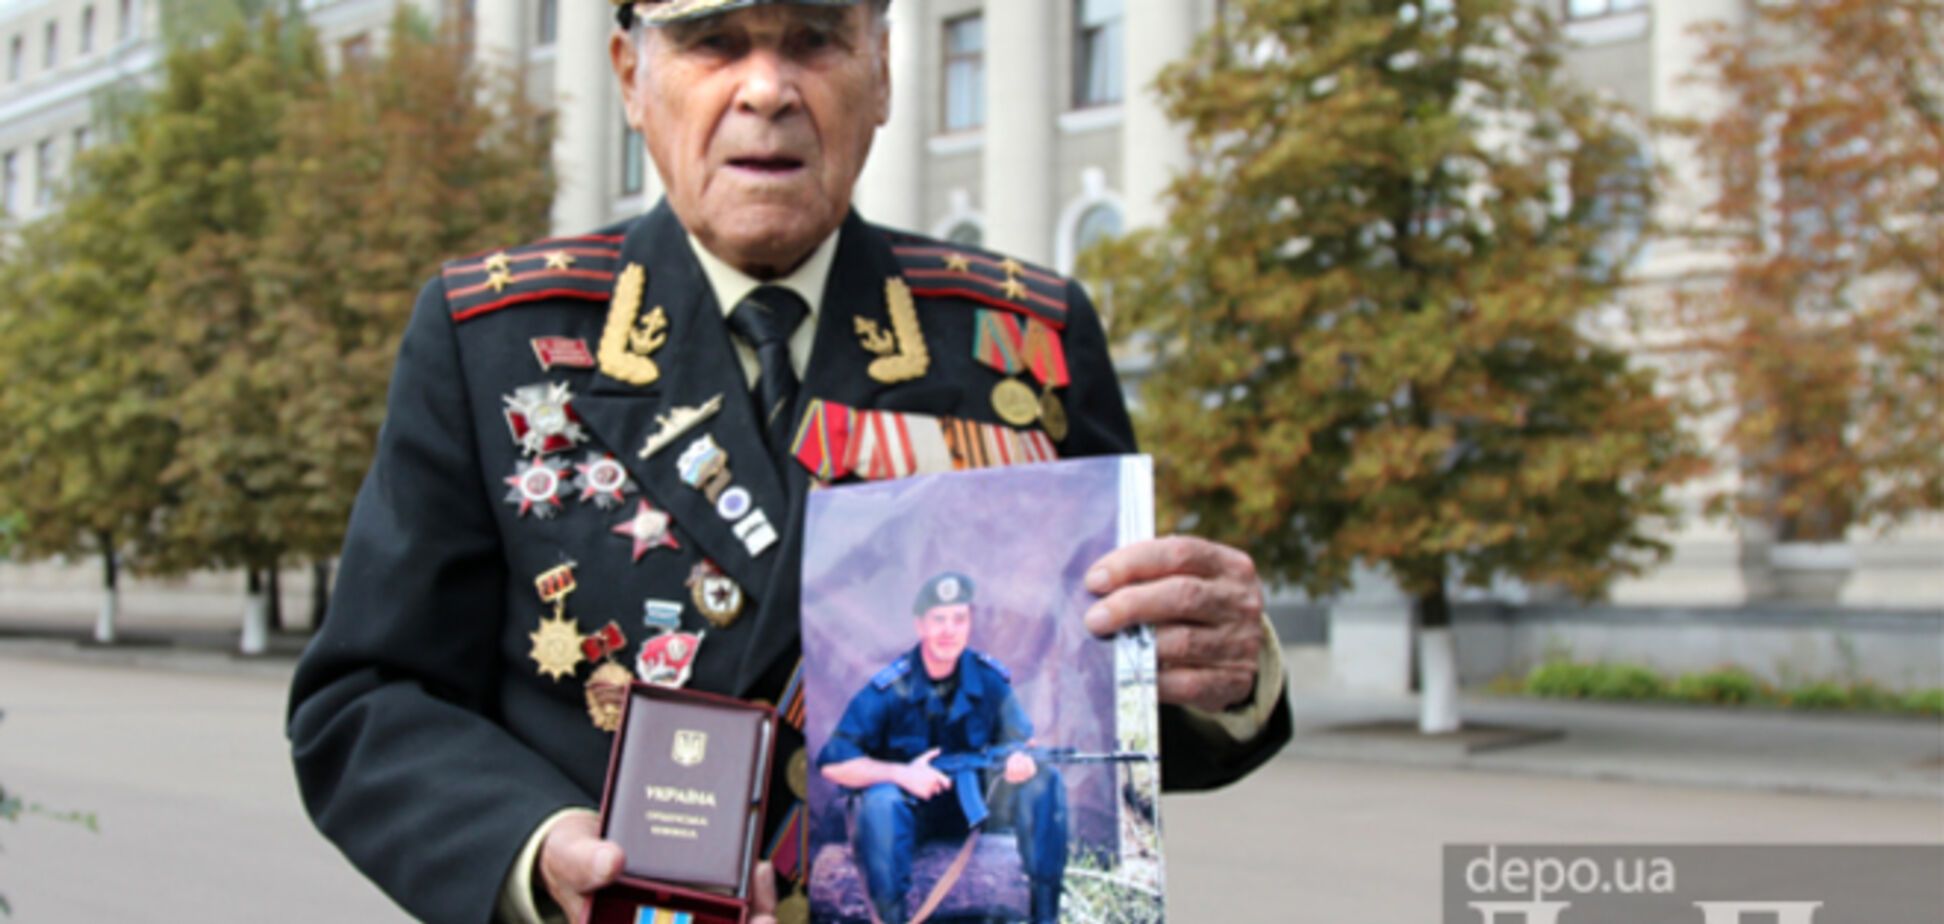 96-летний ветеран ВОВ получил орден своего внука, погибшего в АТО